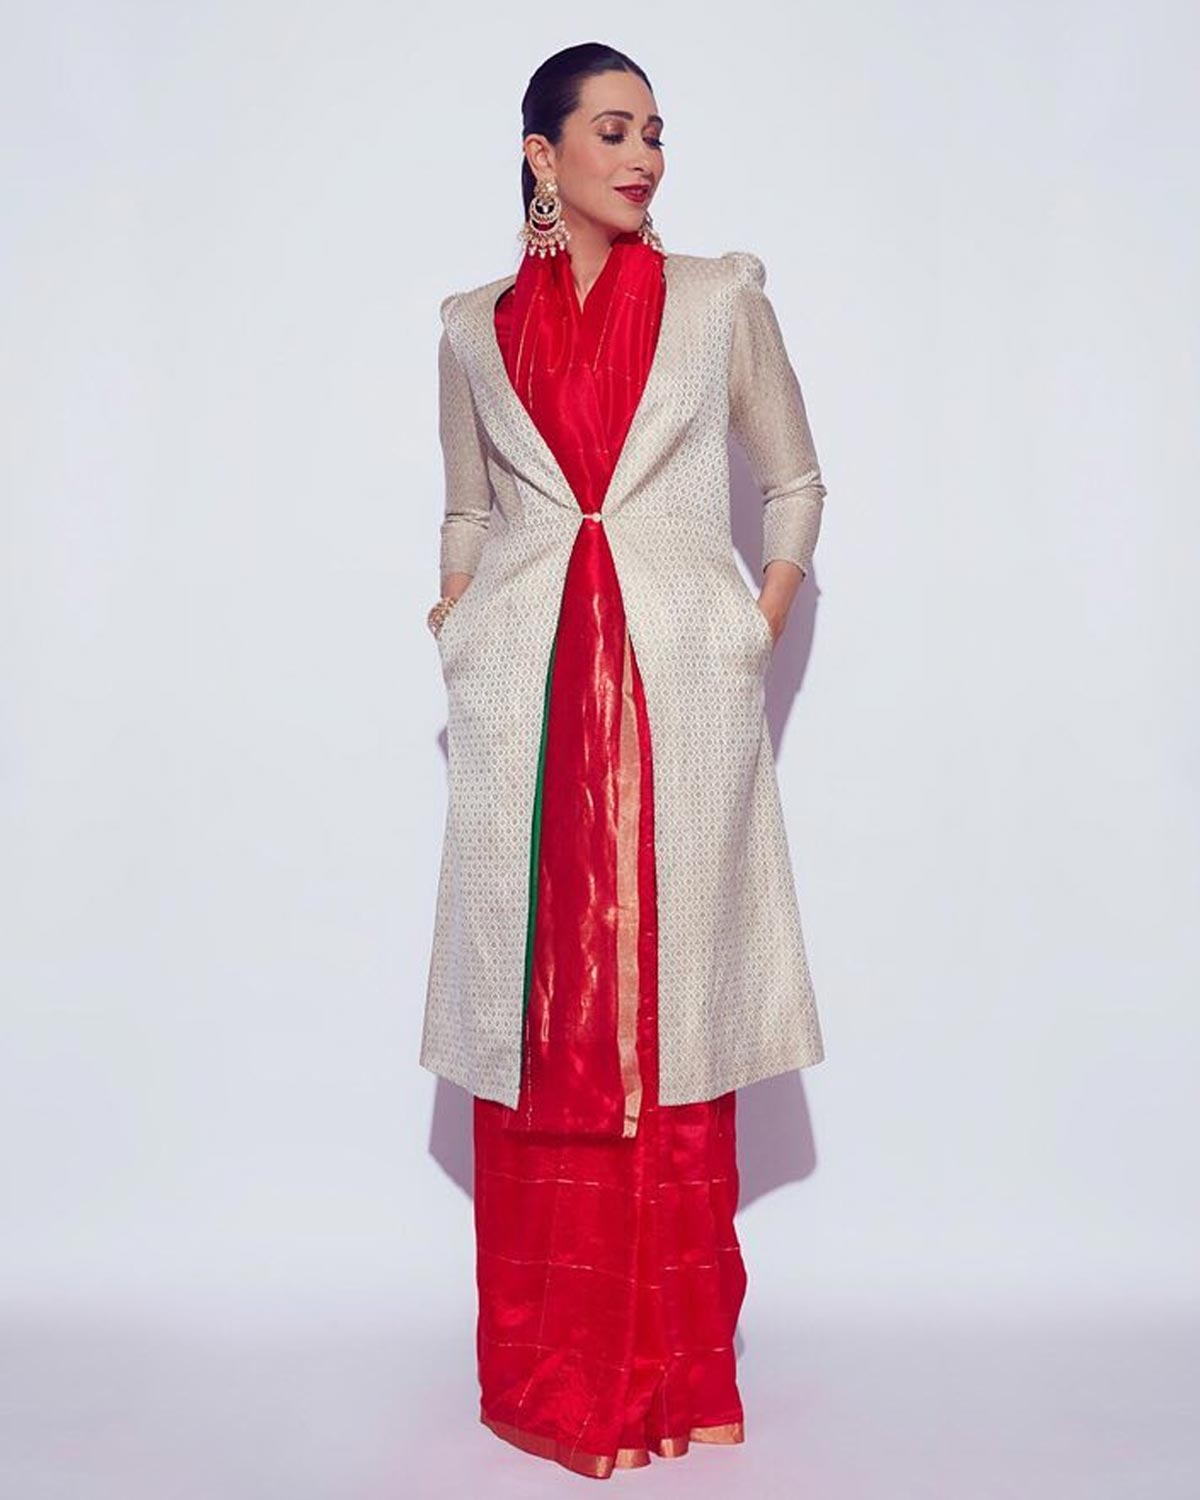 How to wear saree with blazers,coat,and cardigans,साड़ी को कोट एंड स्वेटर्स  के साथ कैसे स्टाइल करे - YouTube